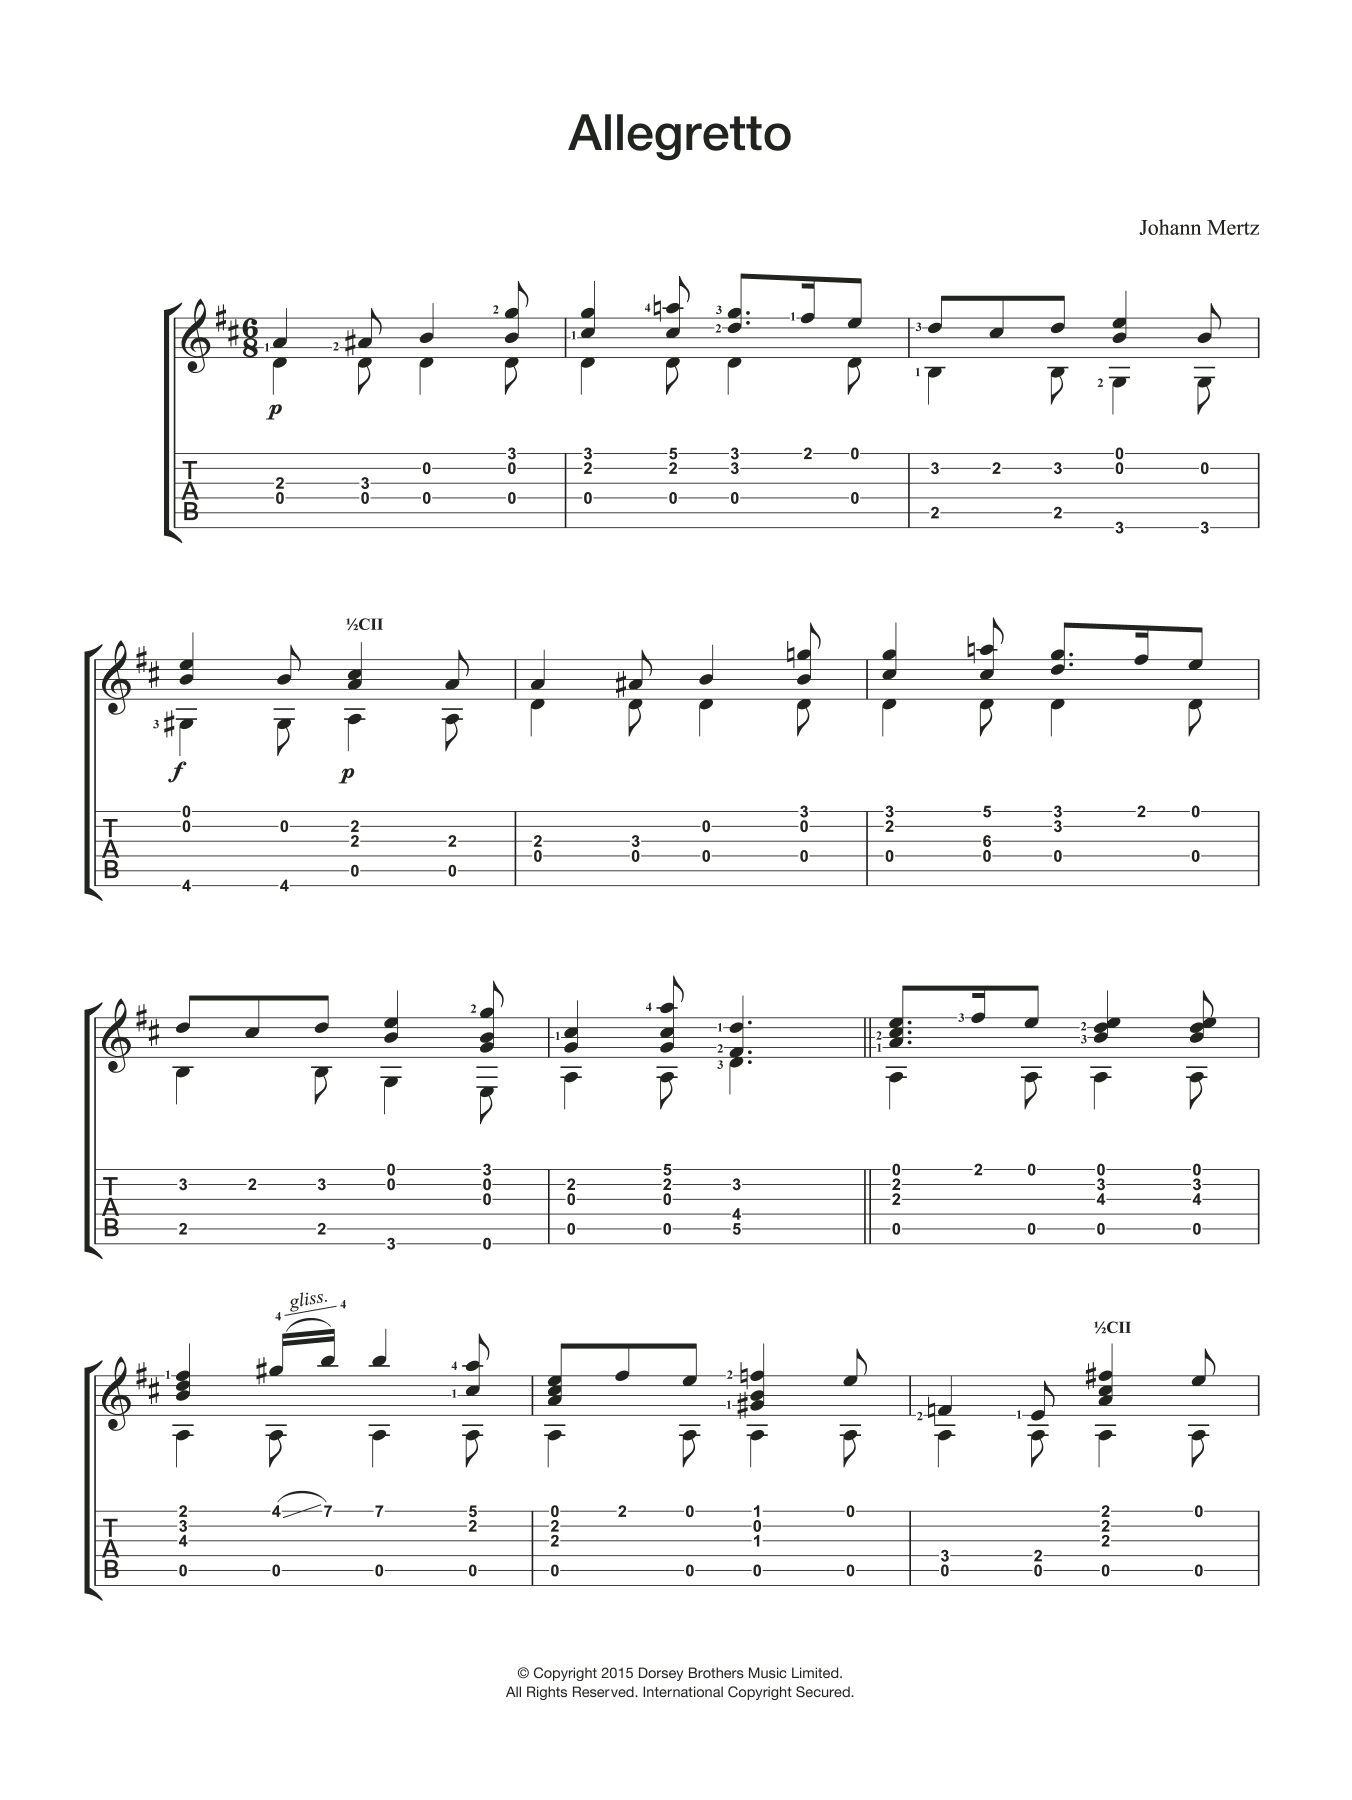 Johann Kaspar Mertz Allegretto Sheet Music Notes & Chords for Guitar - Download or Print PDF